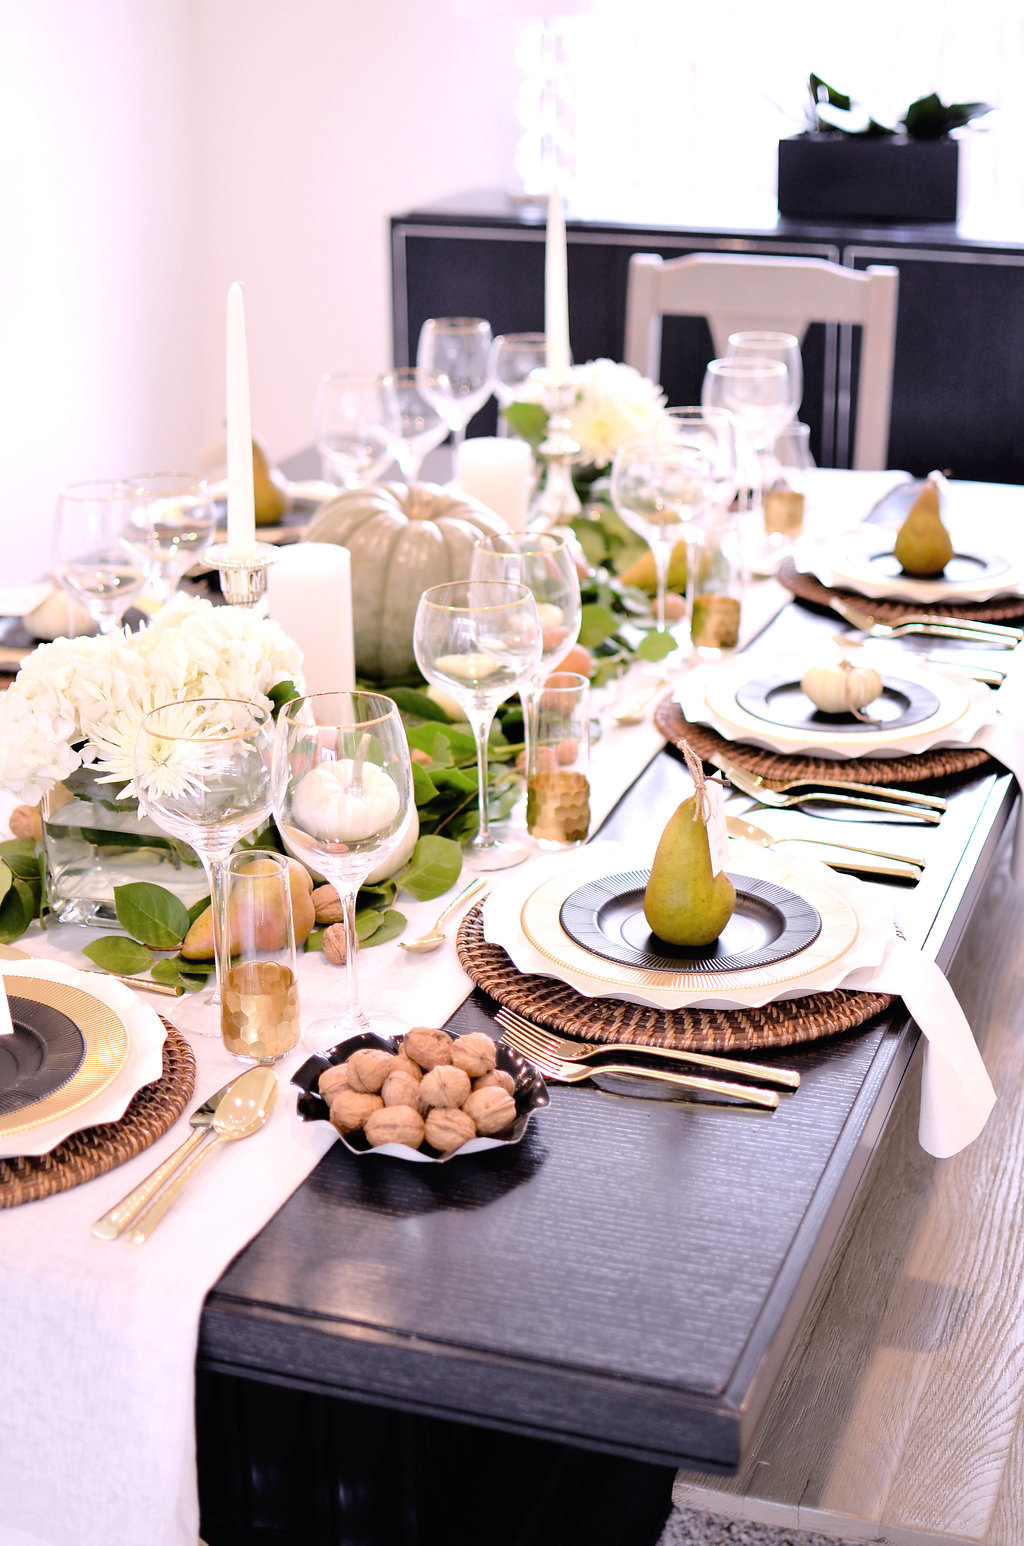 Fall Harvest Table for Thanksgiving | Deborah Shearer | The Inspired Home